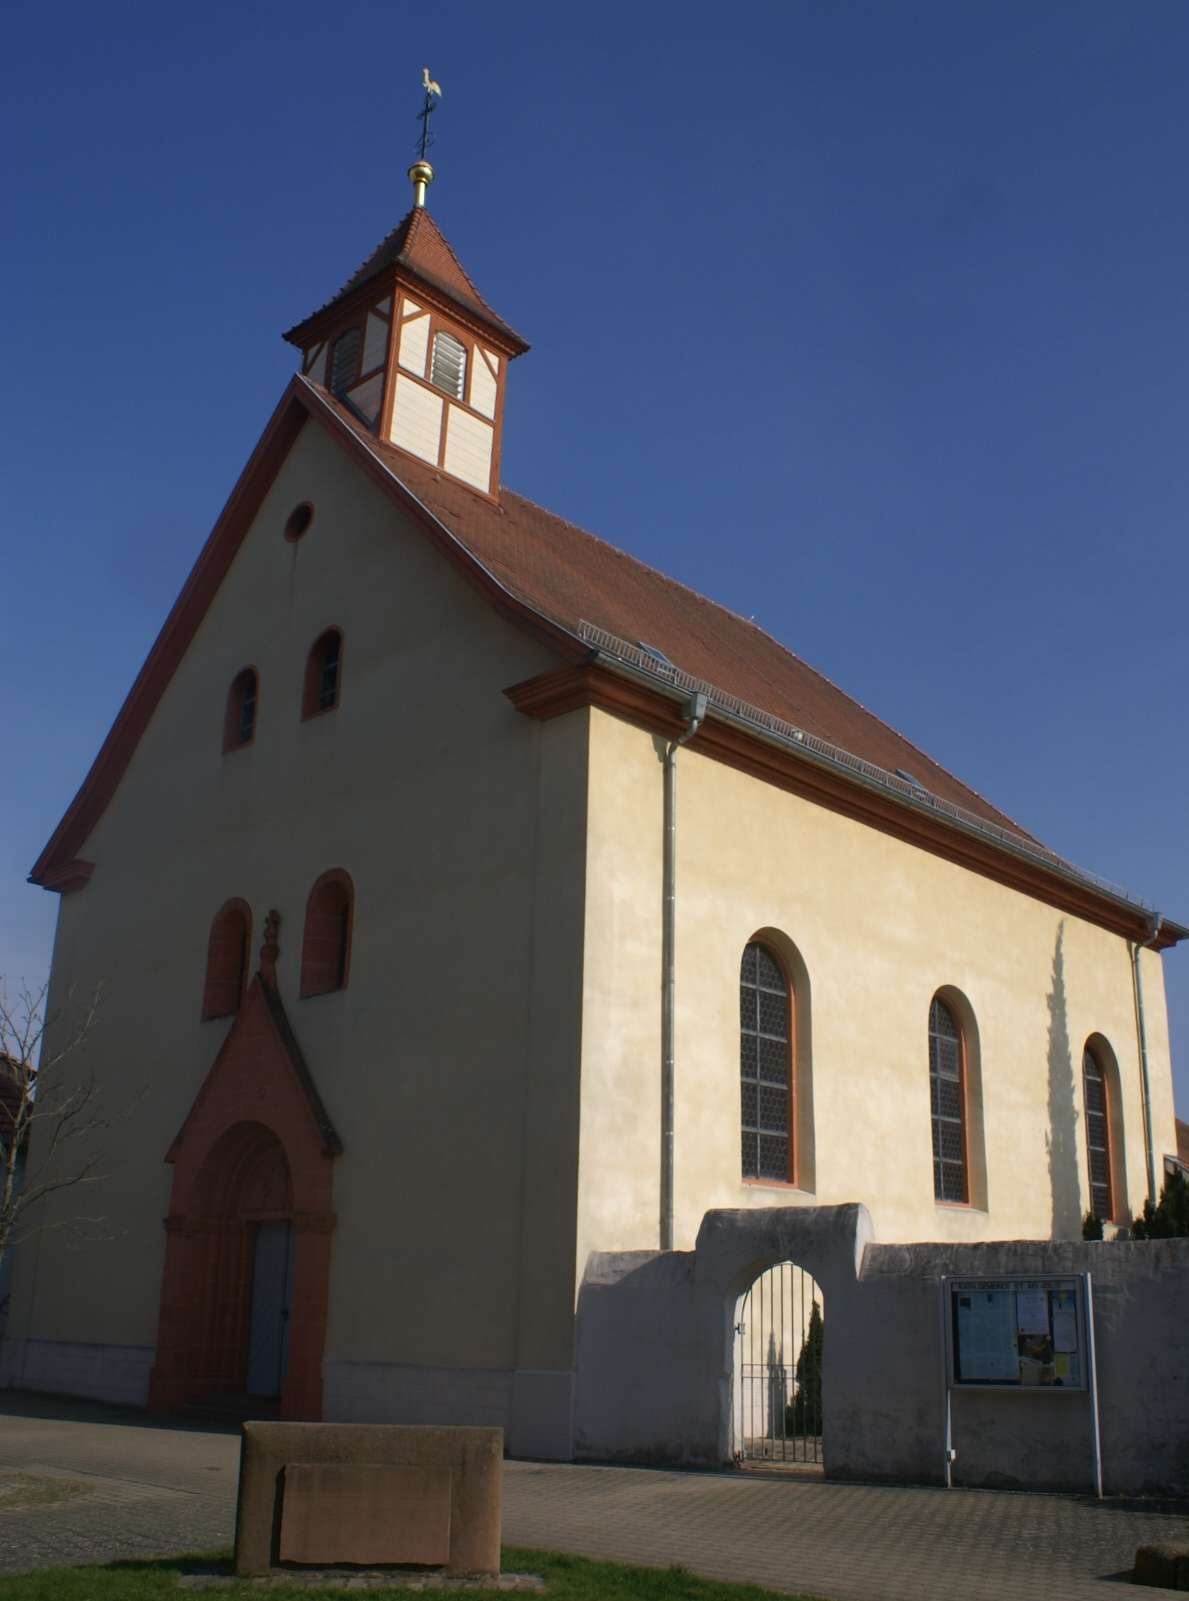  Katholische Kirche St. Ilgen 